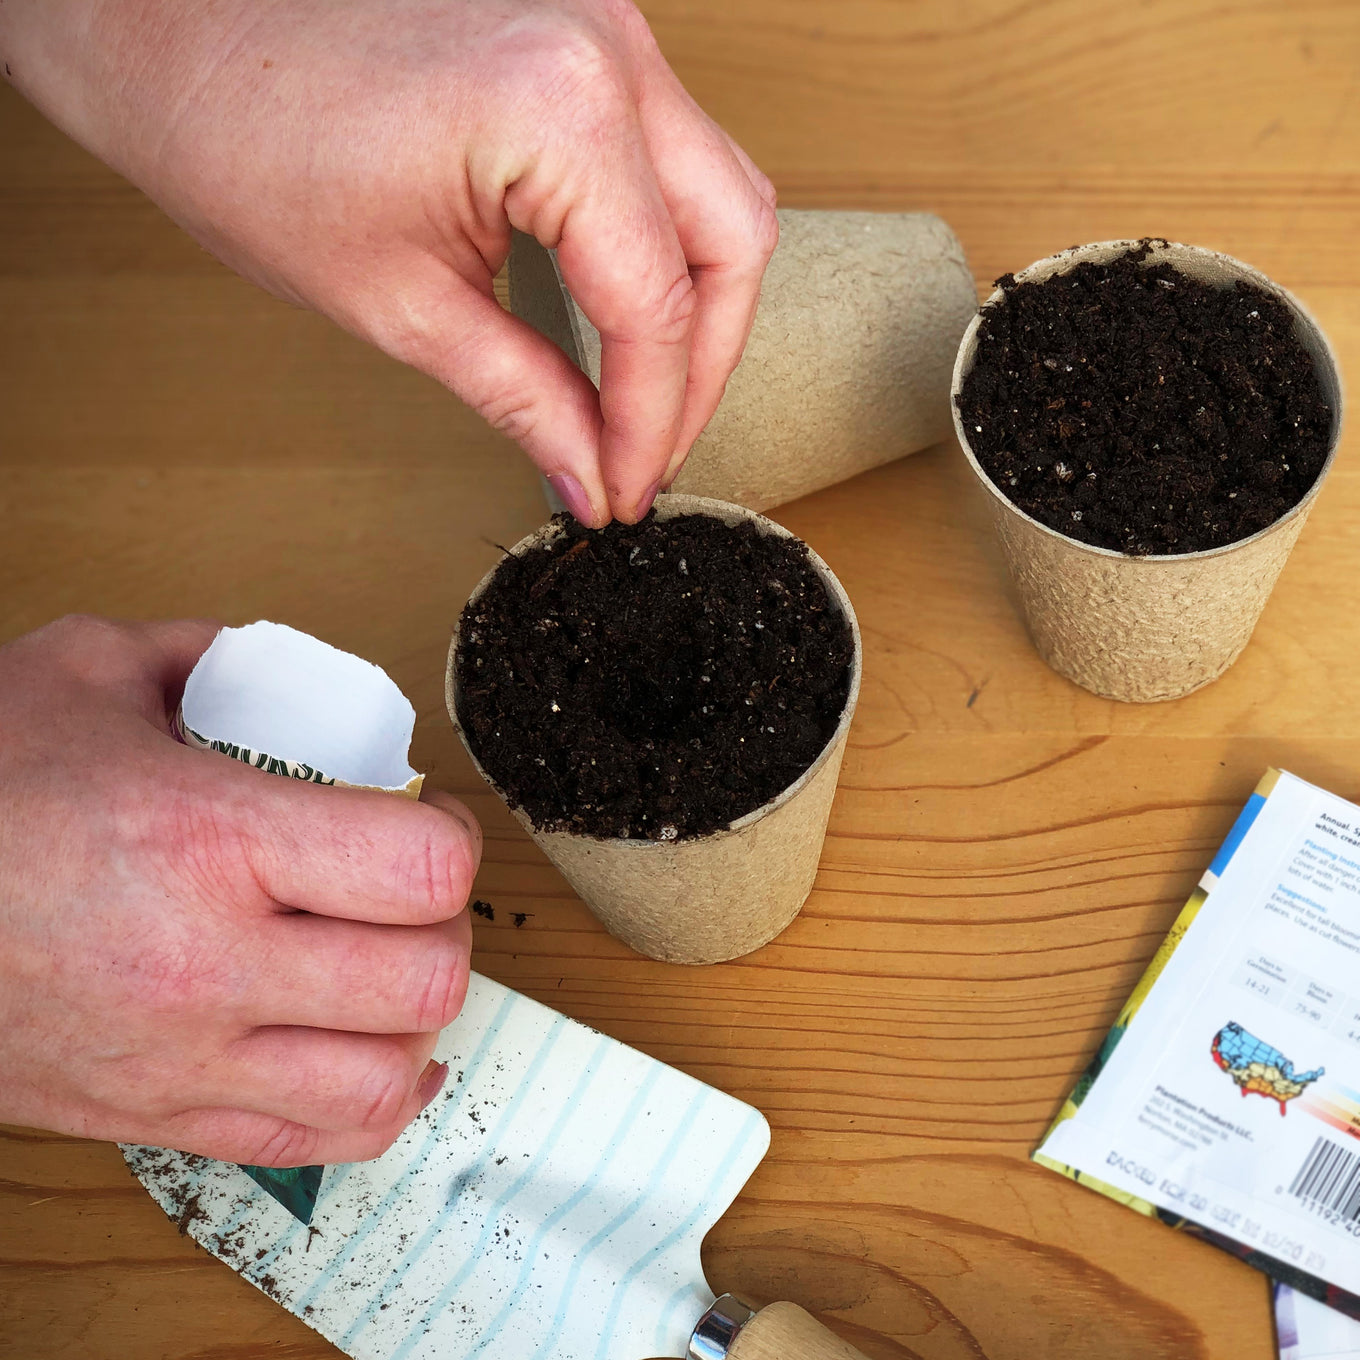 Start Mini Harvest Blend Pumpkins seeds in biodegradable paper or peat pots.